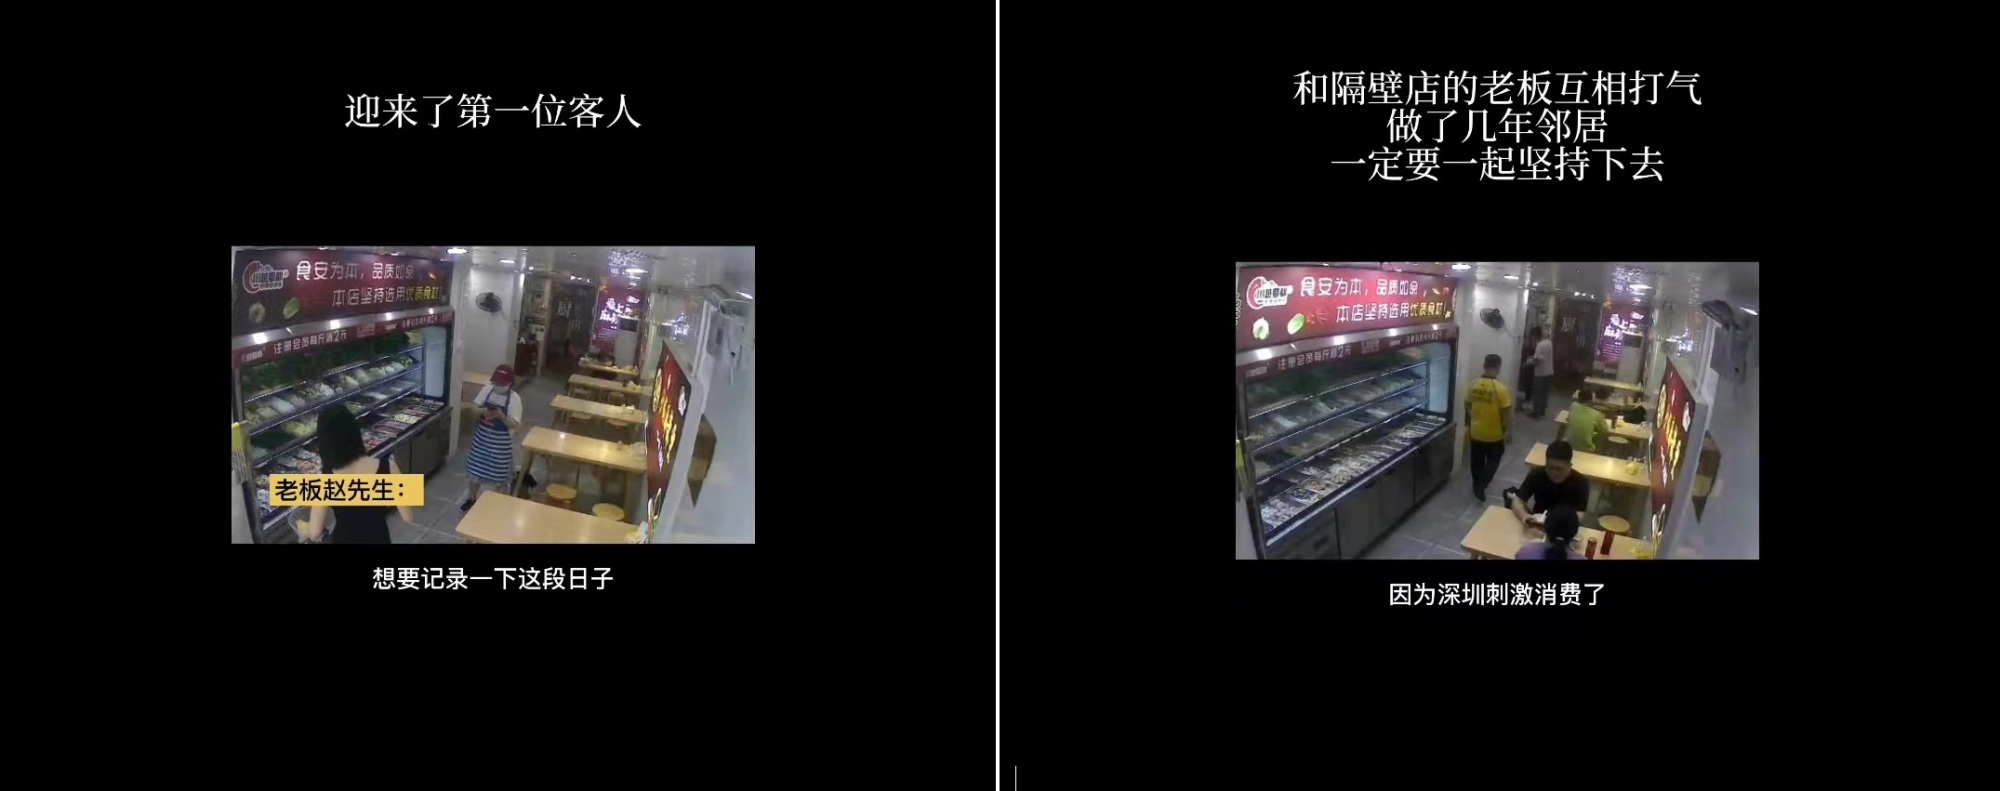 深圳餐飲小店老闆記錄疫情經歷，“一切會好起來的”